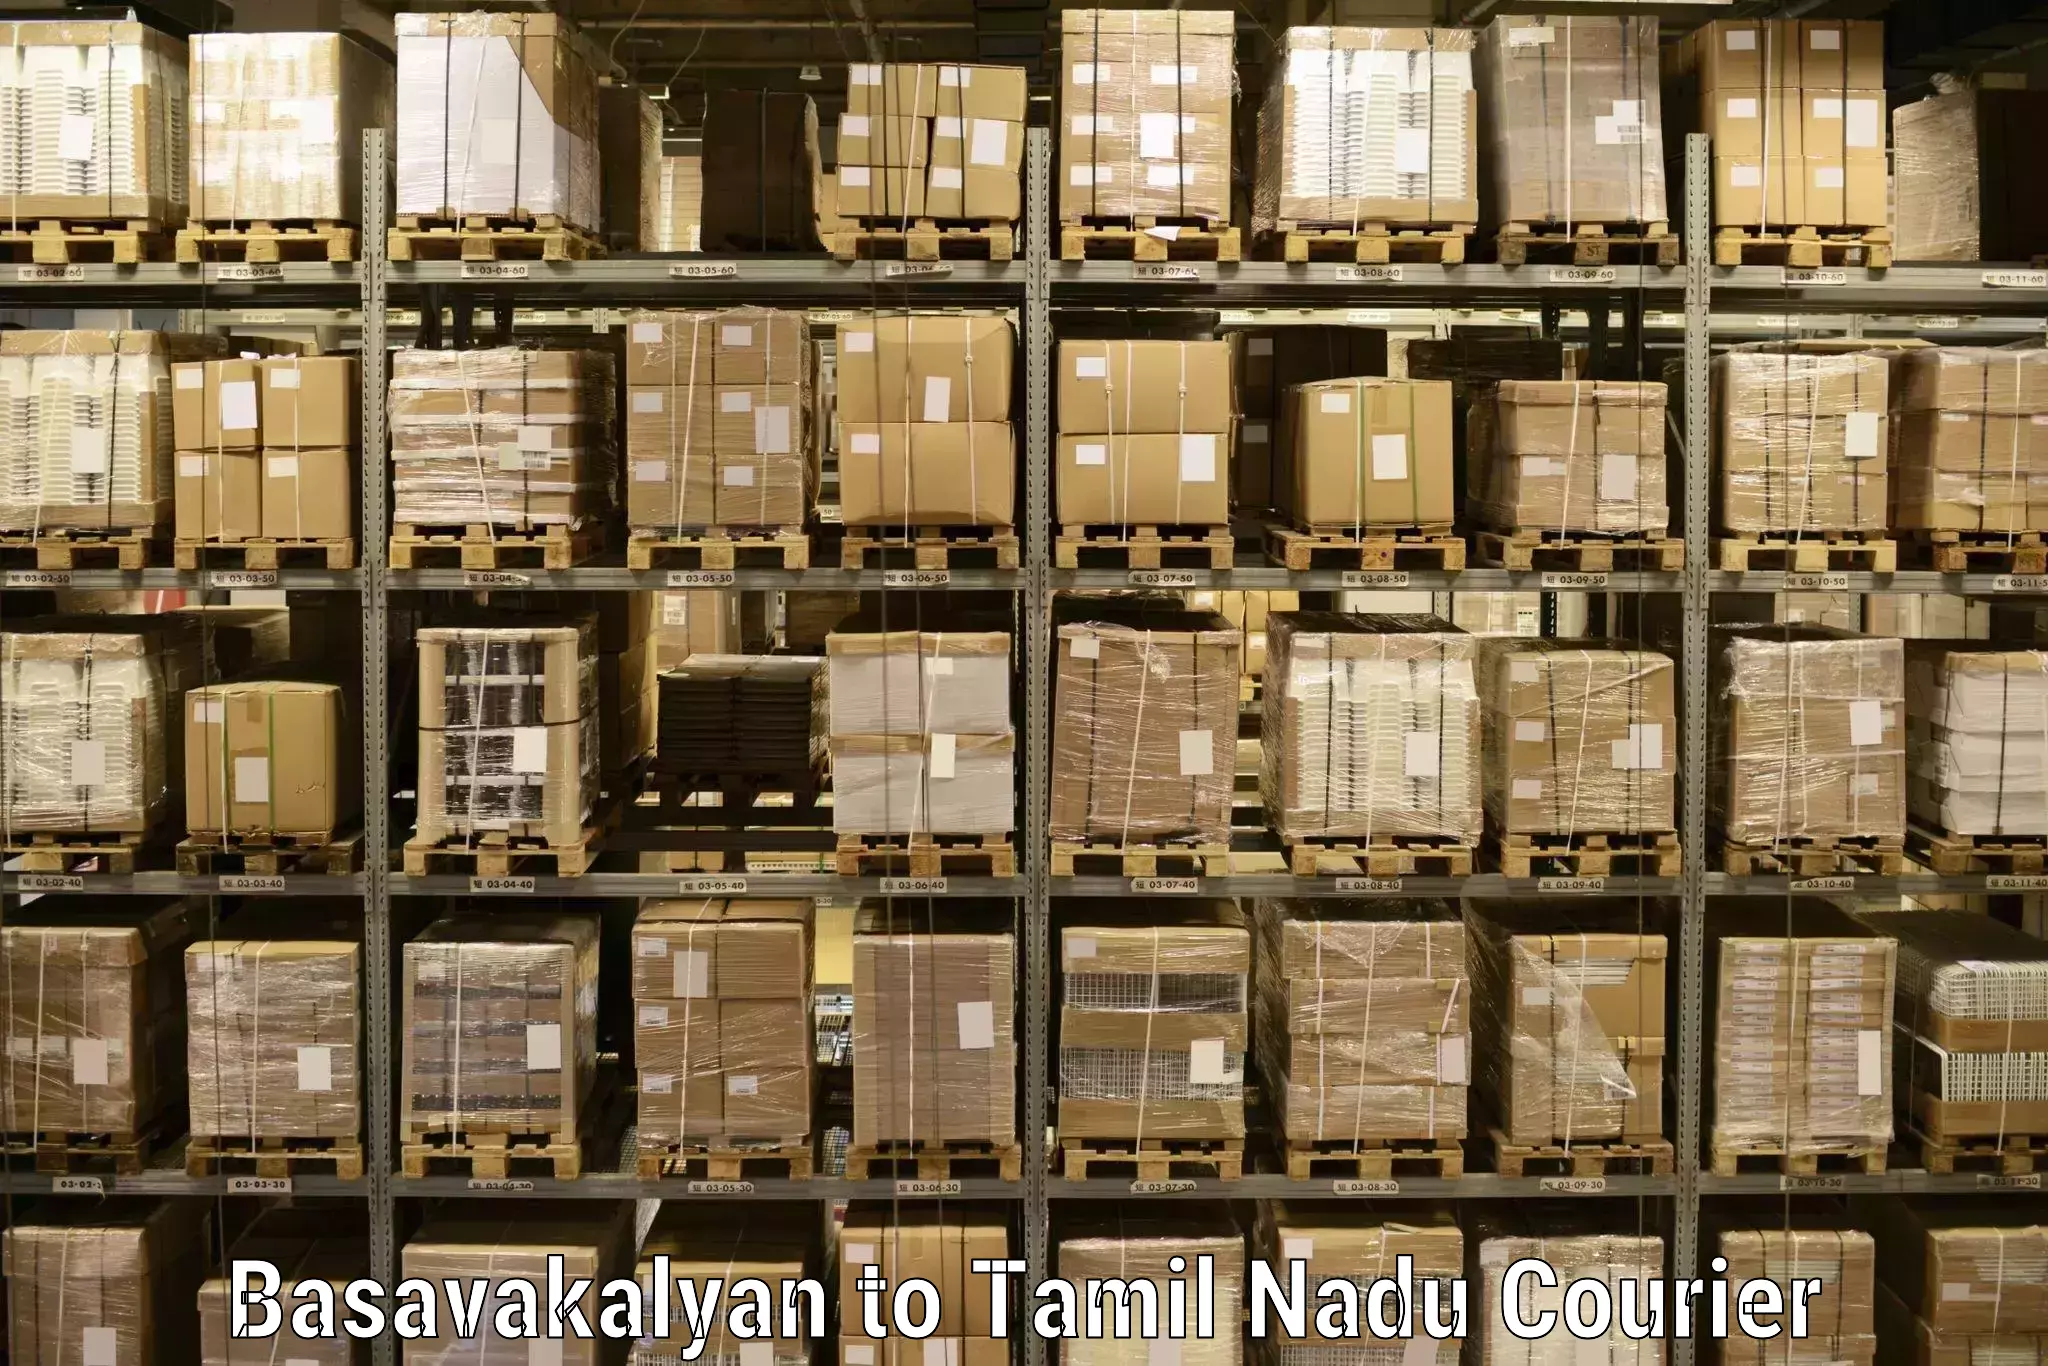 Comprehensive parcel tracking Basavakalyan to Tiruturaipundi